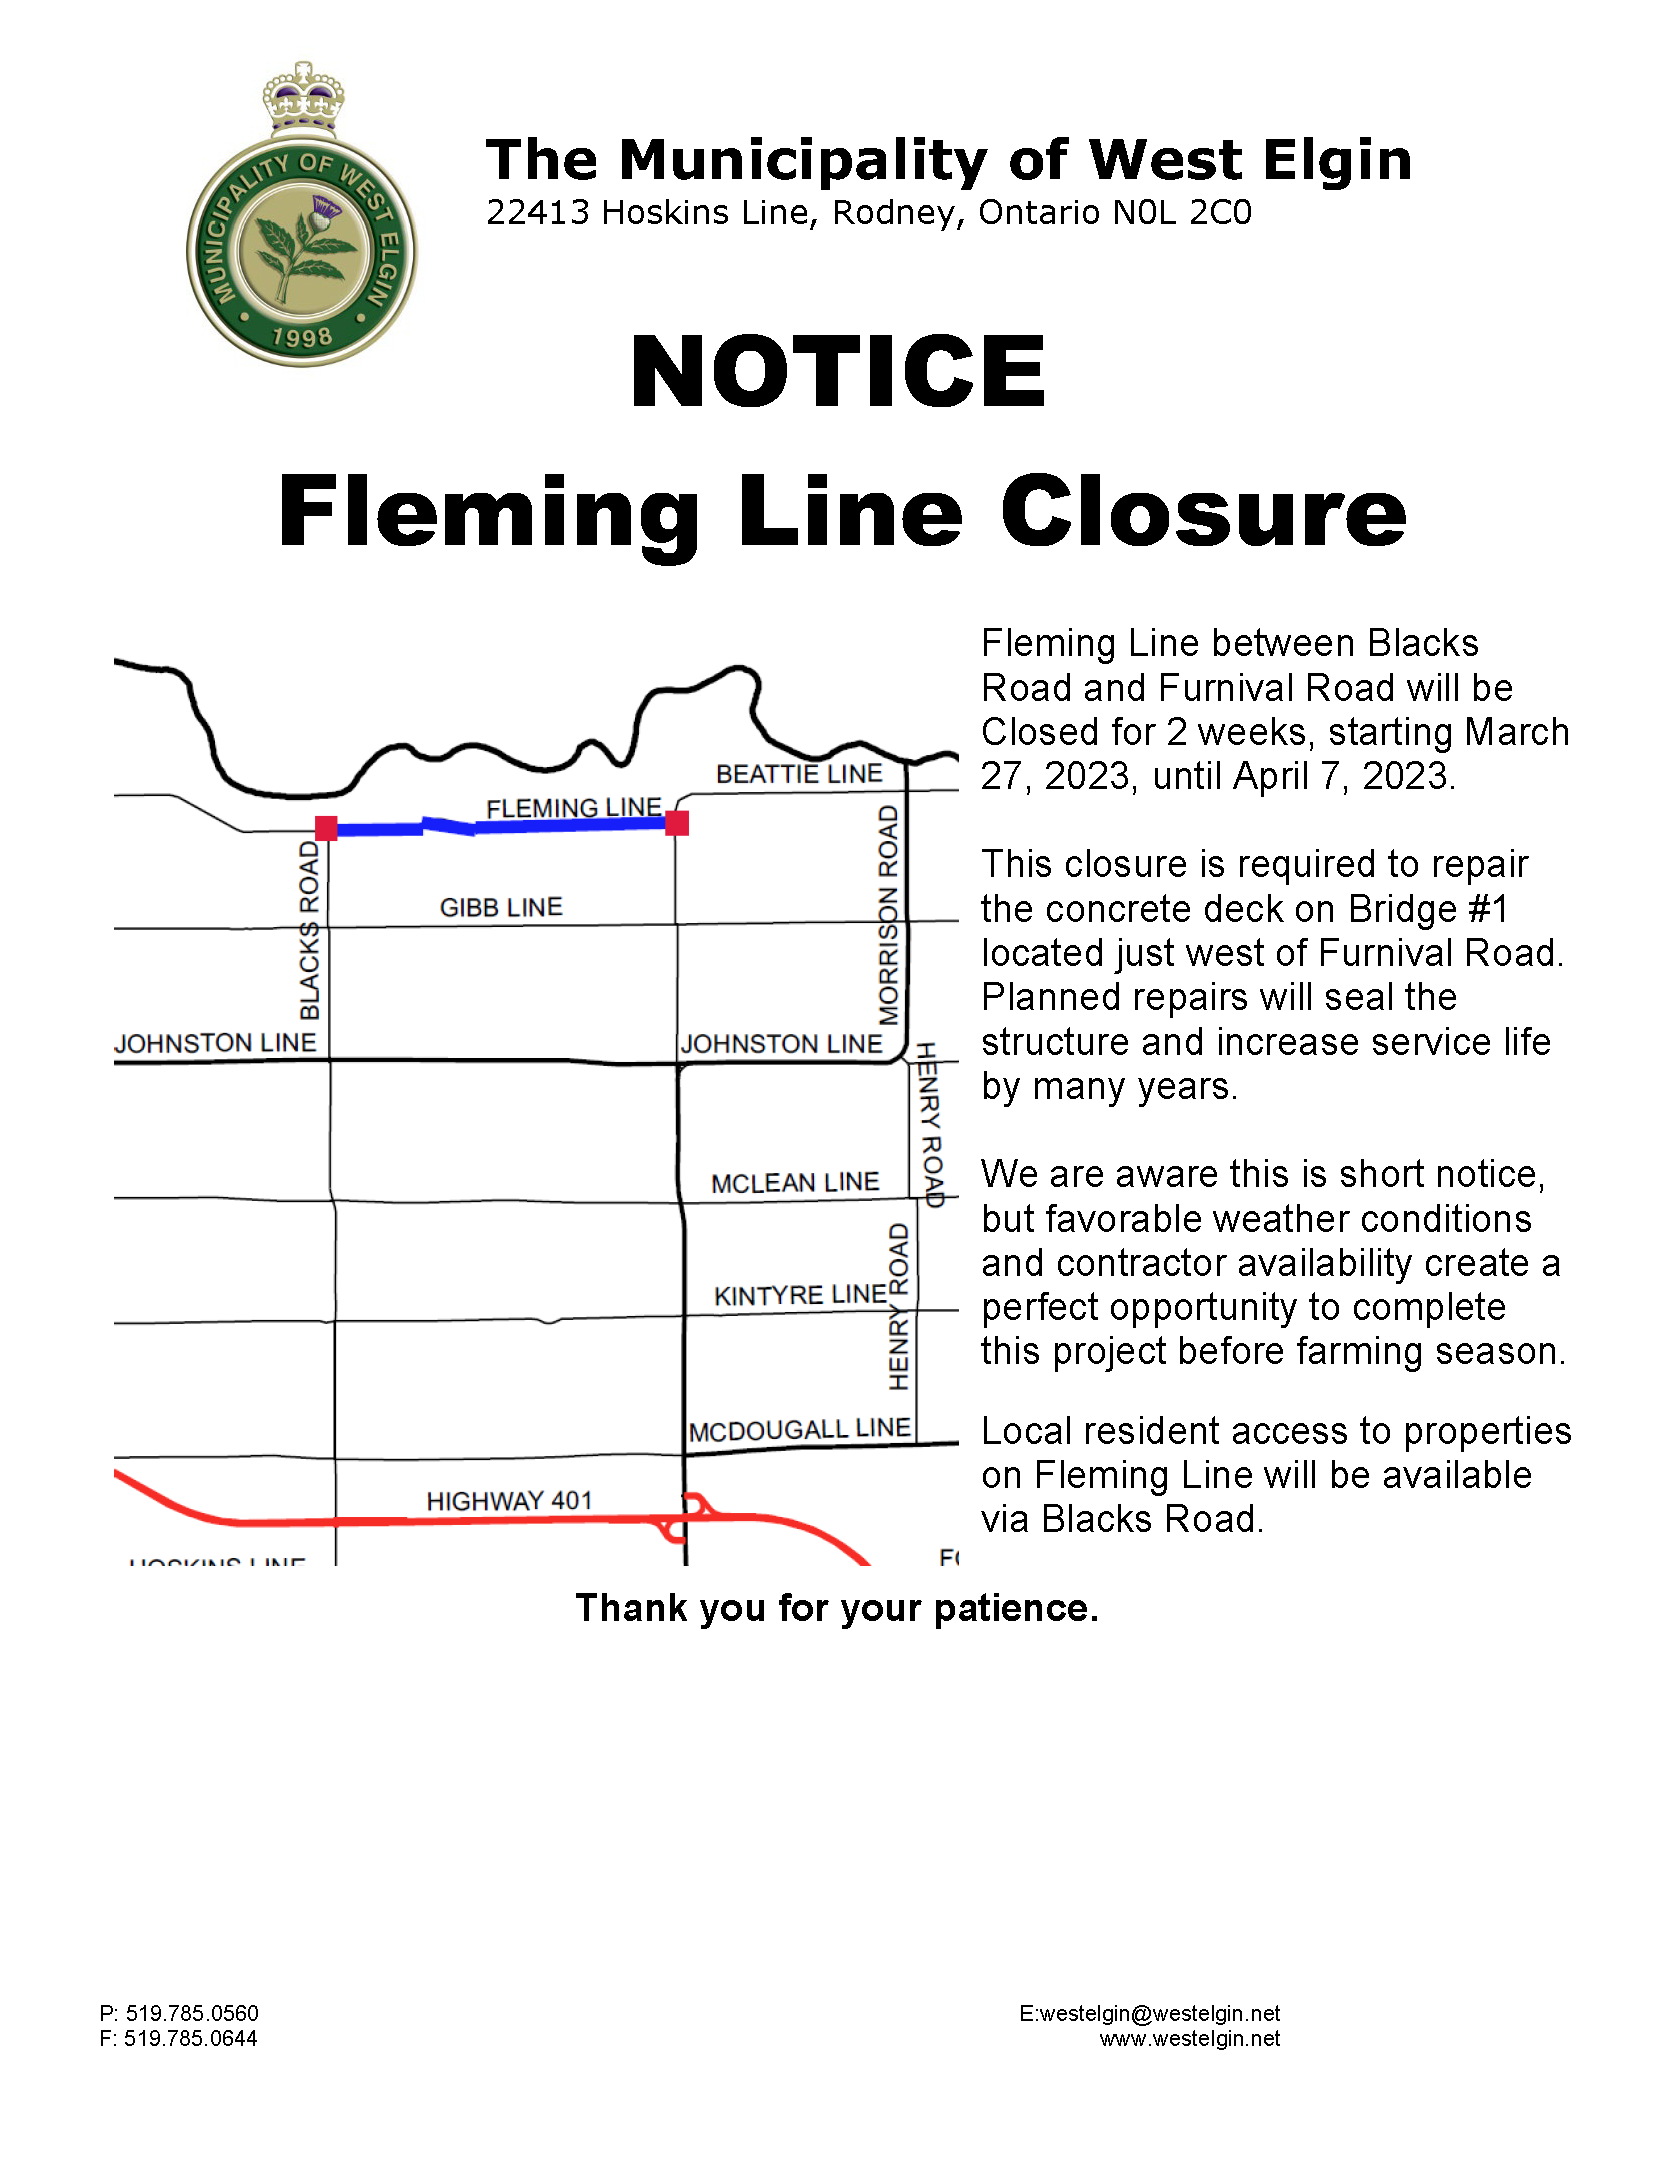 Fleming Line Closure Notice